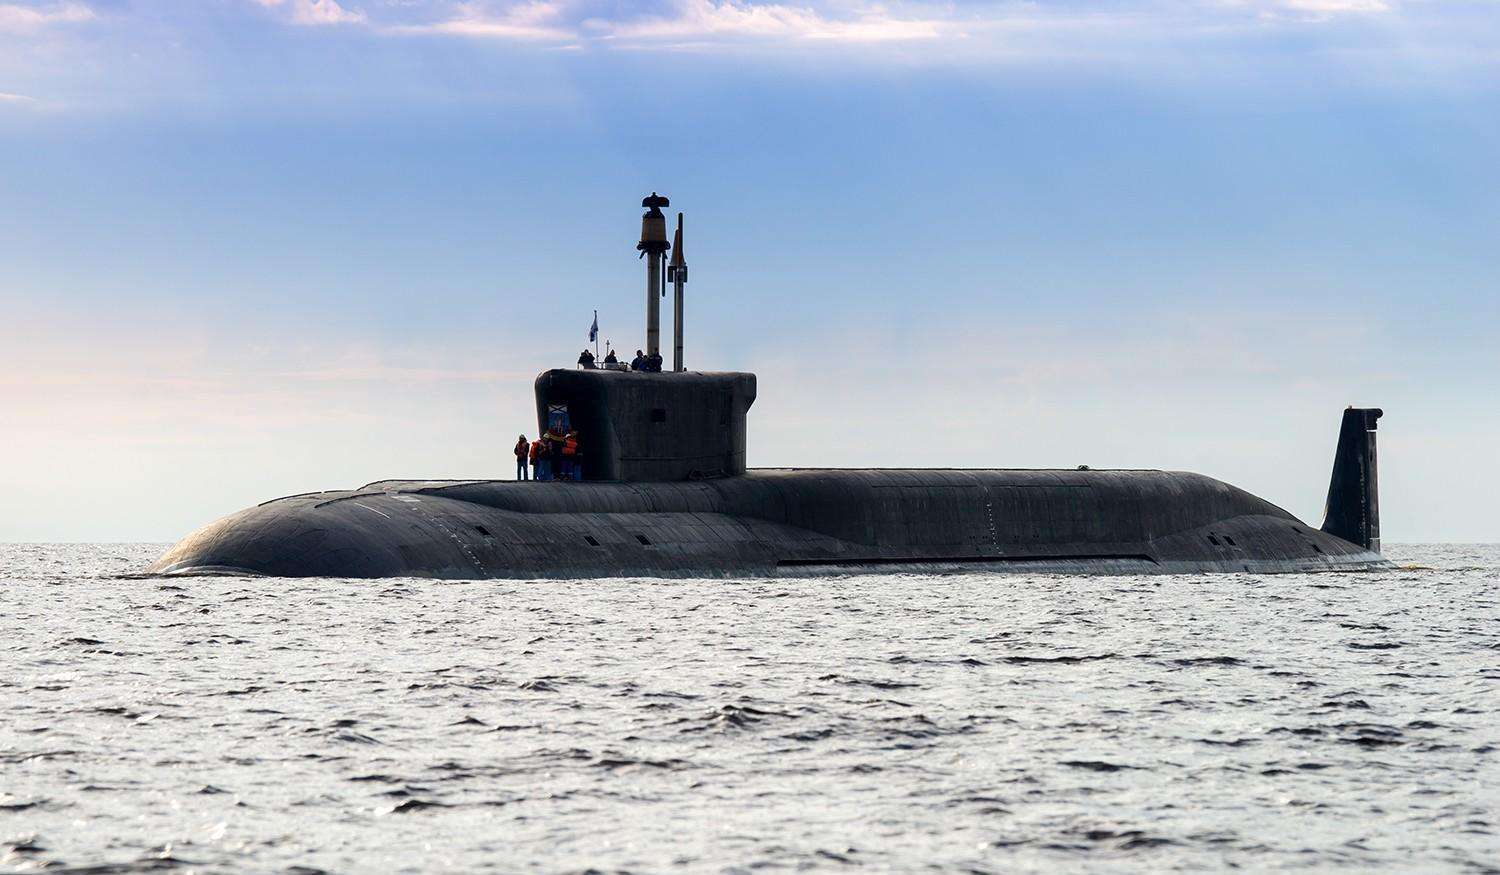 俄罗斯第四代核潜艇北风之神,到底有多厉害?让美国倍感压力